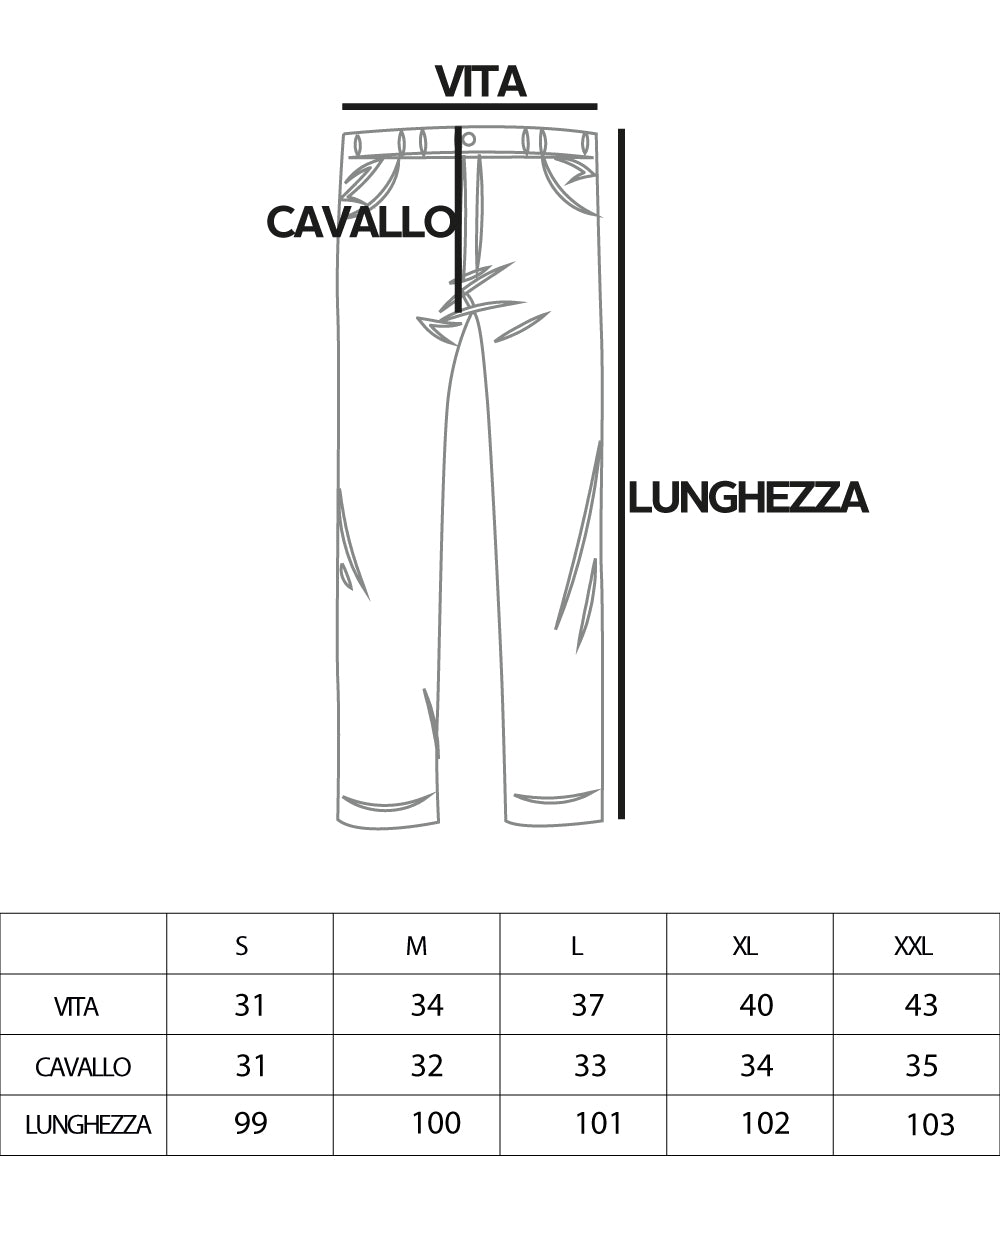 Pantaloni Uomo Baggy Lungo Fondo Largo Elastico Sul Retro Abbottonatura Allungata Nero Casual Elegante GIOSAL-P5917A